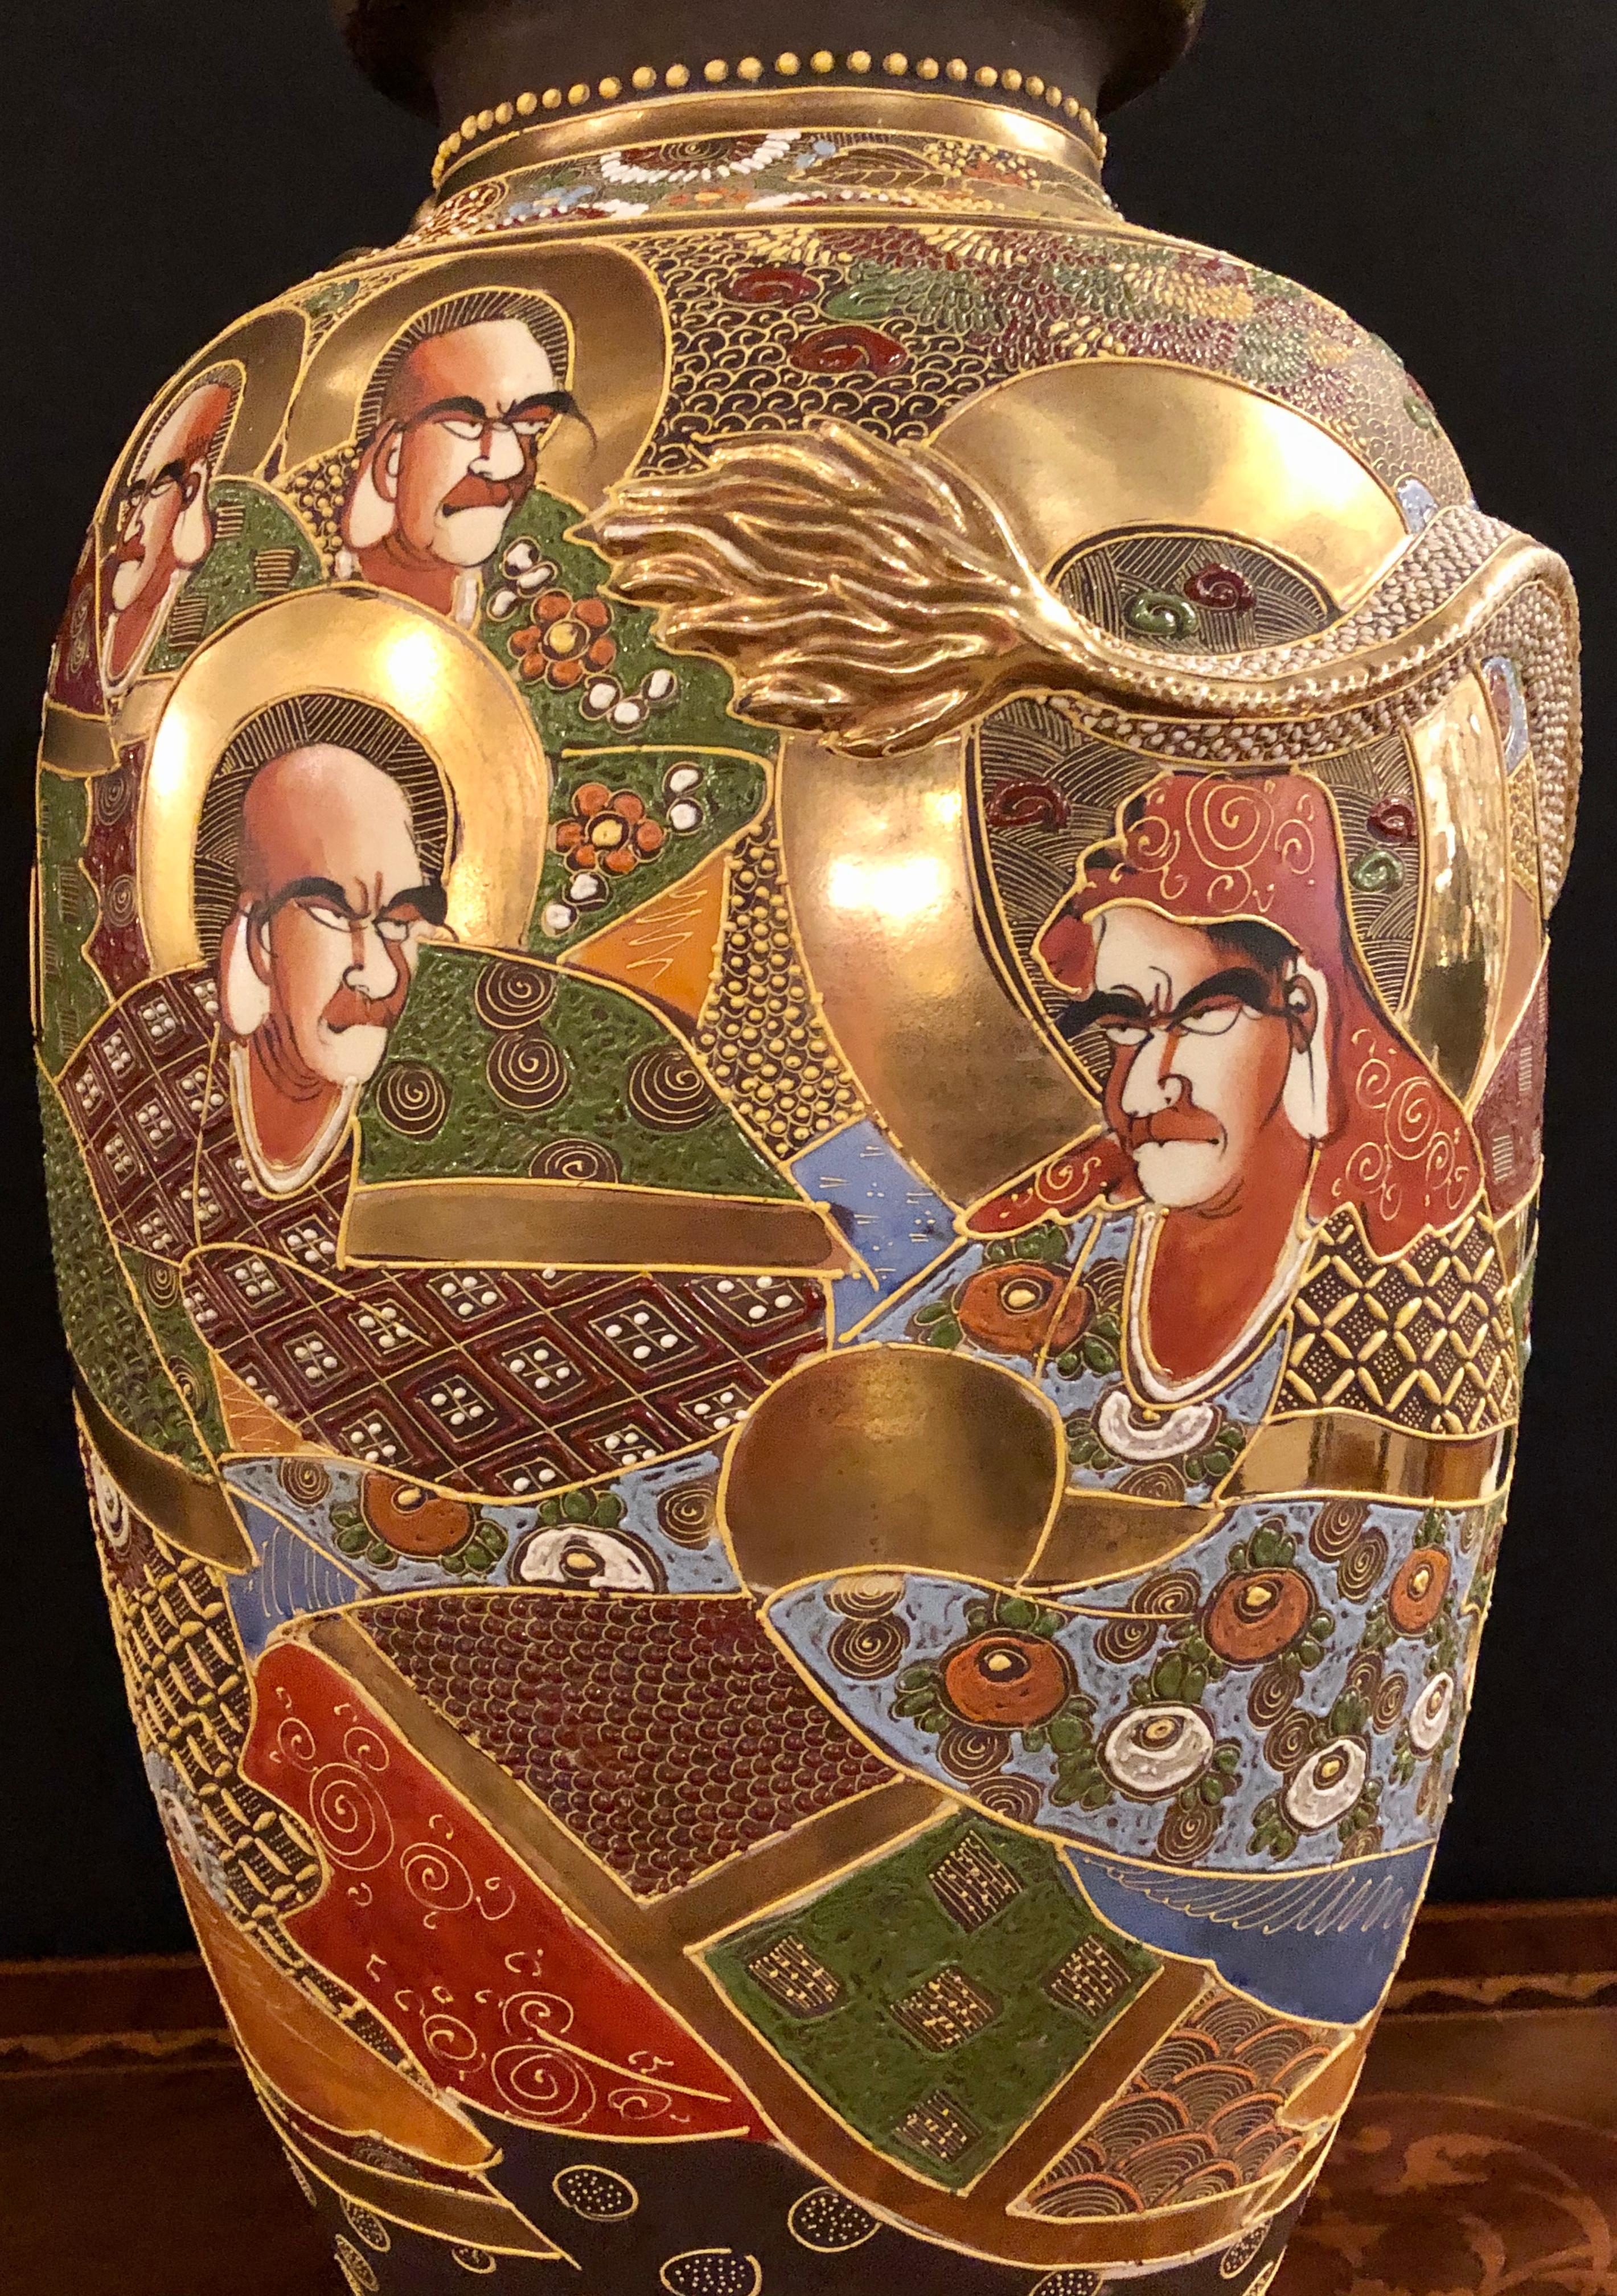 Japanese Satsuma Vase Large and Impressive Gilt Gold Dragon Decorated, Signed 1